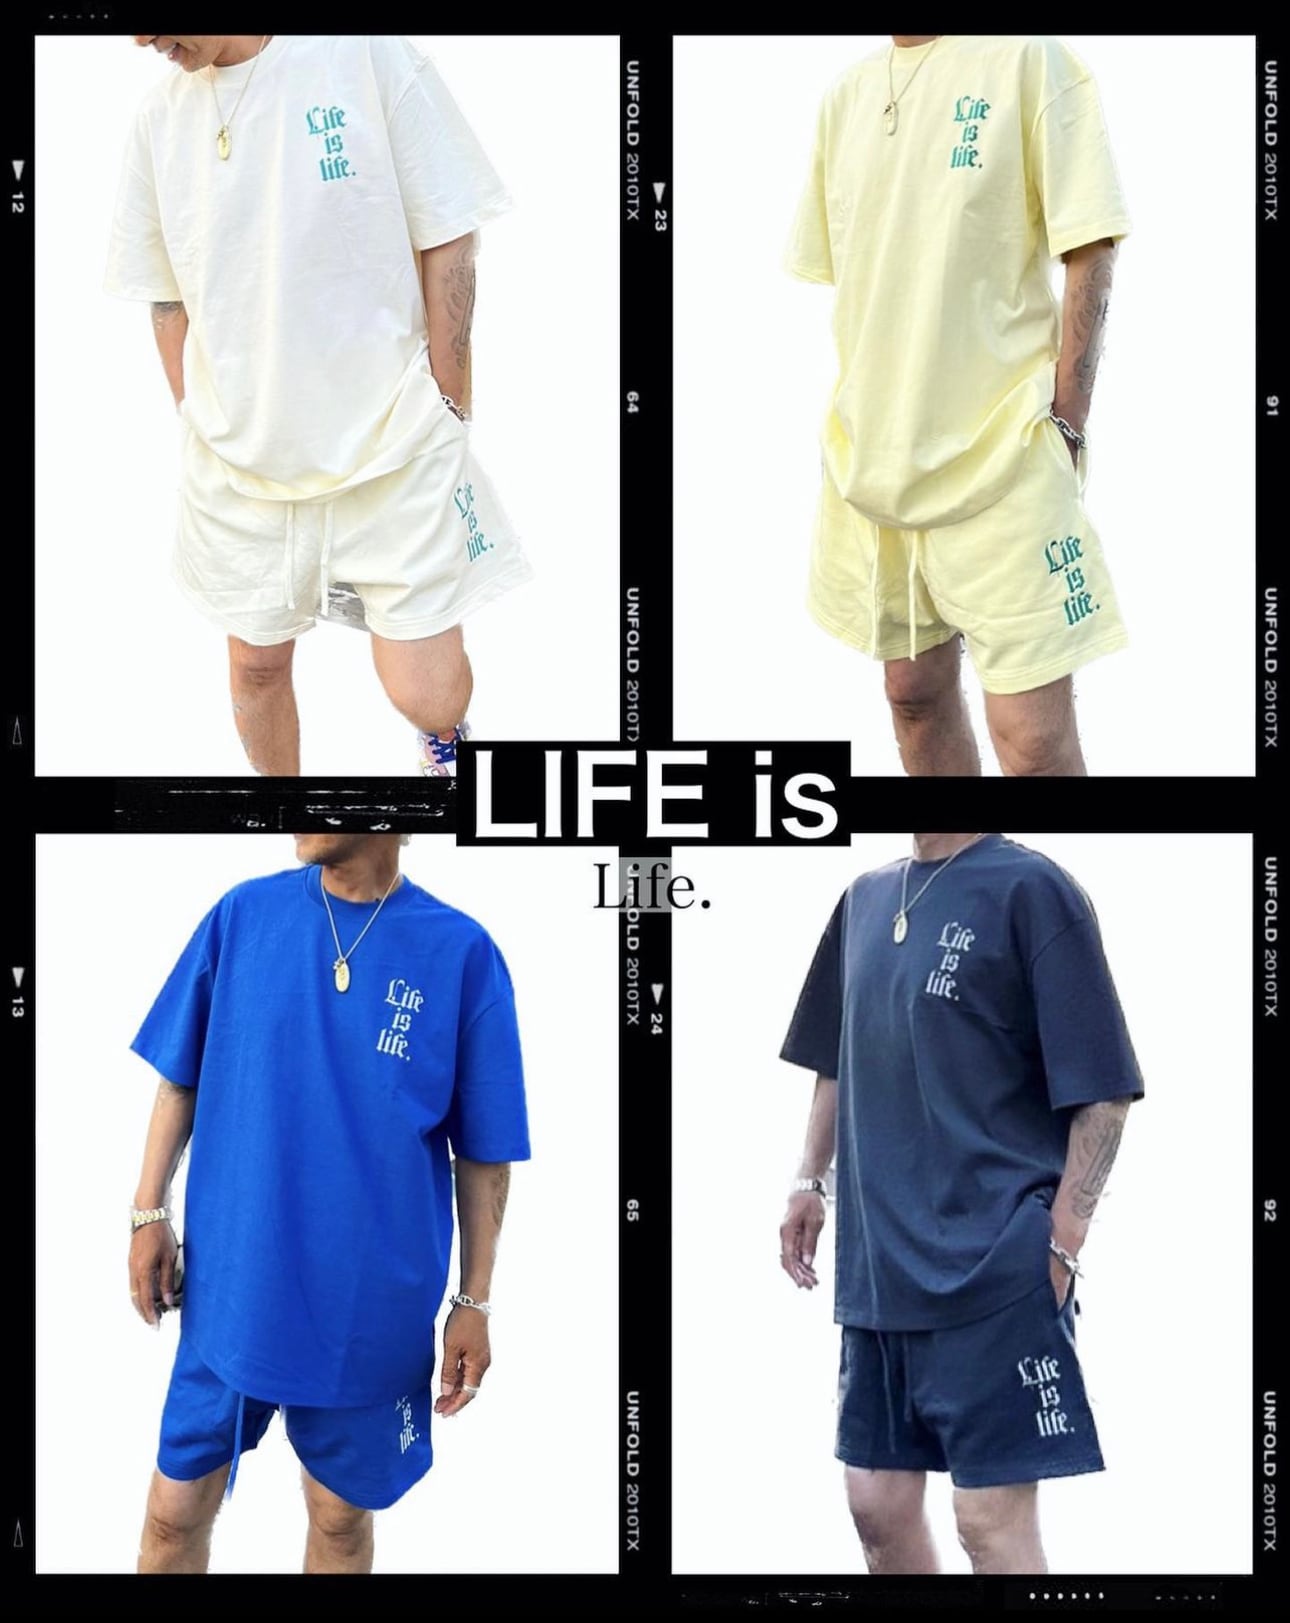 LIFE is lifeエンブロイダリーTシャツ セットアップ可(上)¥7900+tax(¥8690)